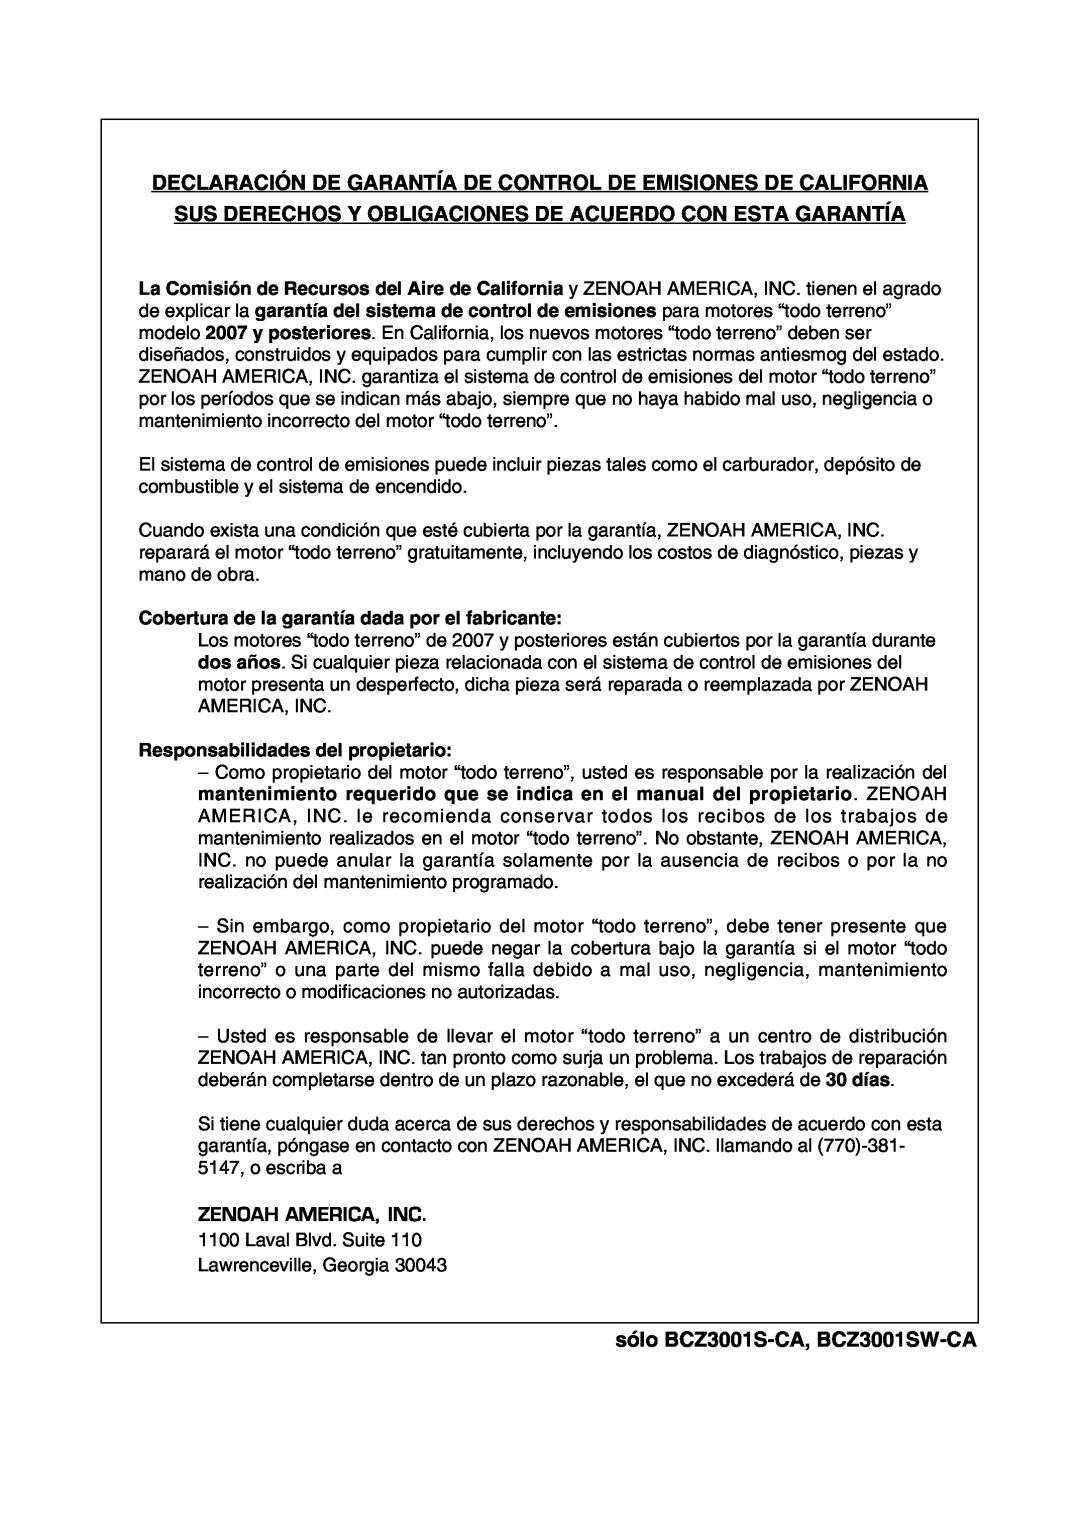 Zenoah manual Declaración De Garantía De Control De Emisiones De California, sólo BCZ3001S-CA, BCZ3001SW-CA 